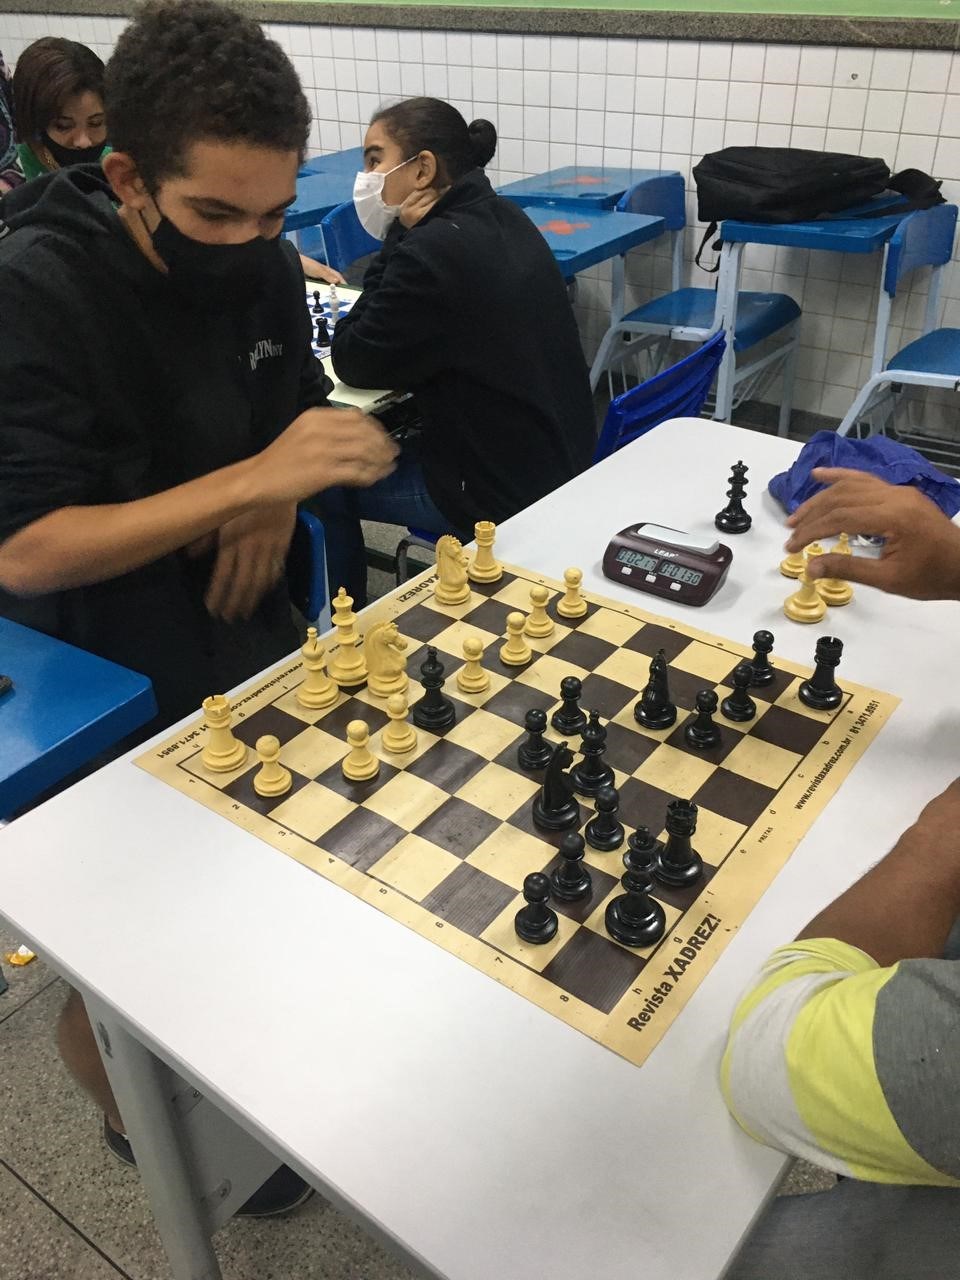 jovem concentrado desenvolvendo estratégia de xadrez, jogando jogo